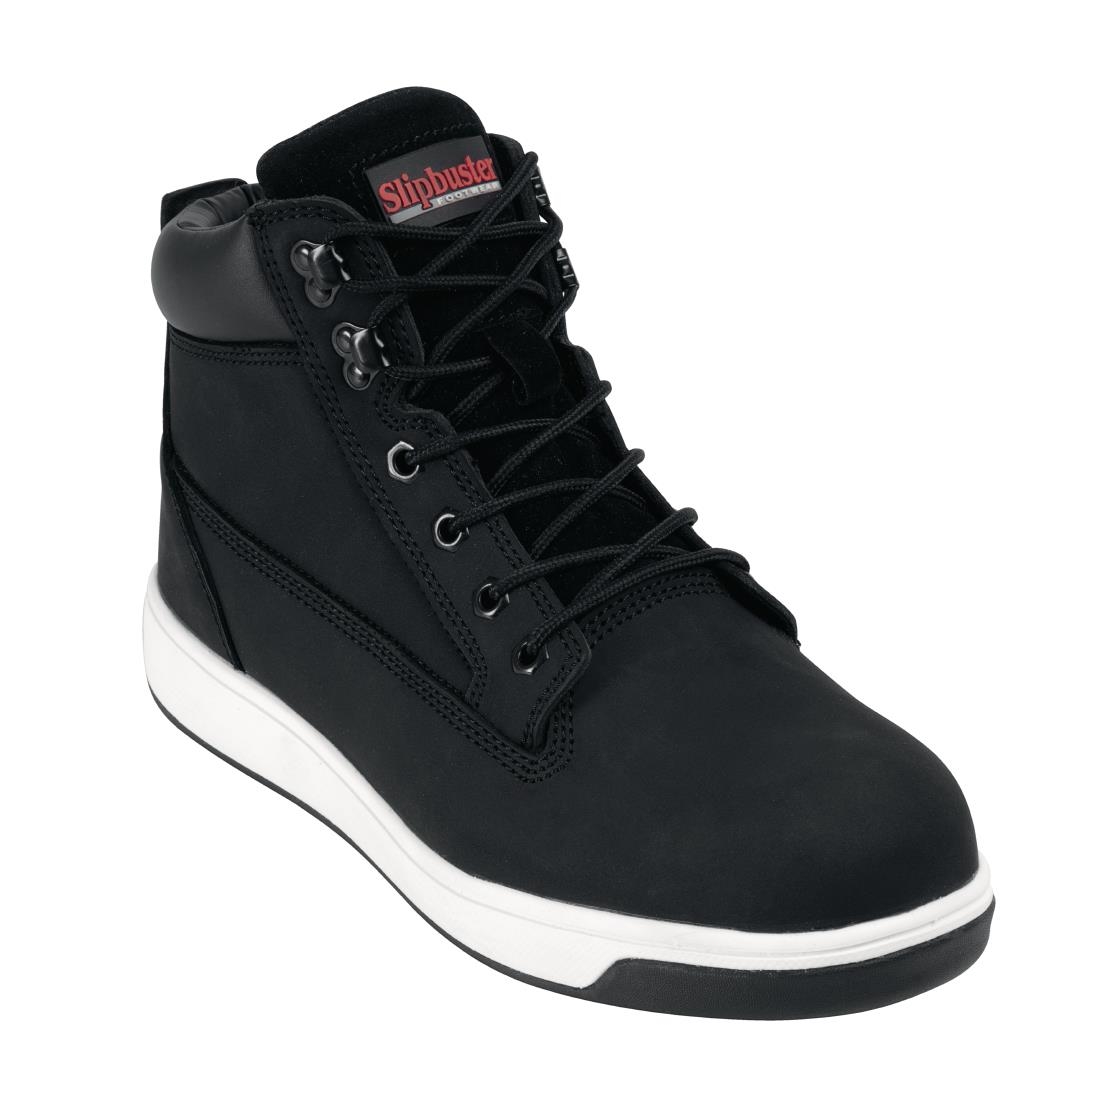 Slipbuster Sneaker Boots Black 39